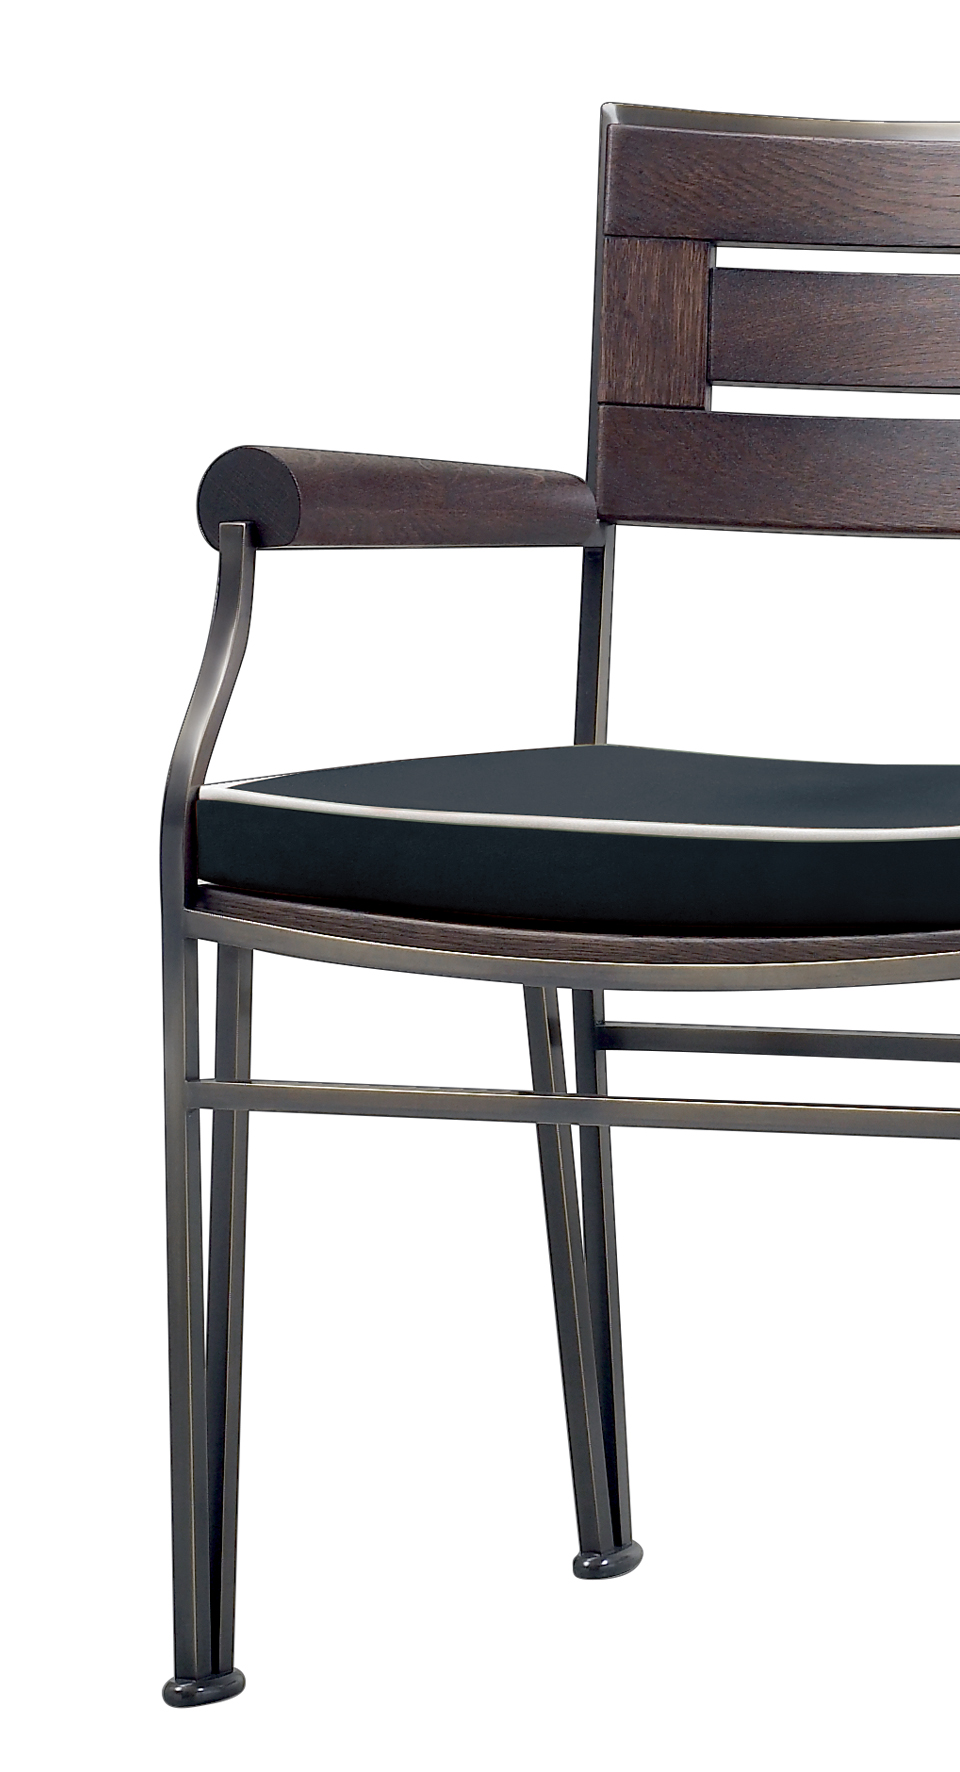 „Cernobbio“ umfasst einen Stuhl und einen Hocker aus Bronze für den Außenbereich, aus dem Outdoor-Katalog von Promemoria | Promemoria